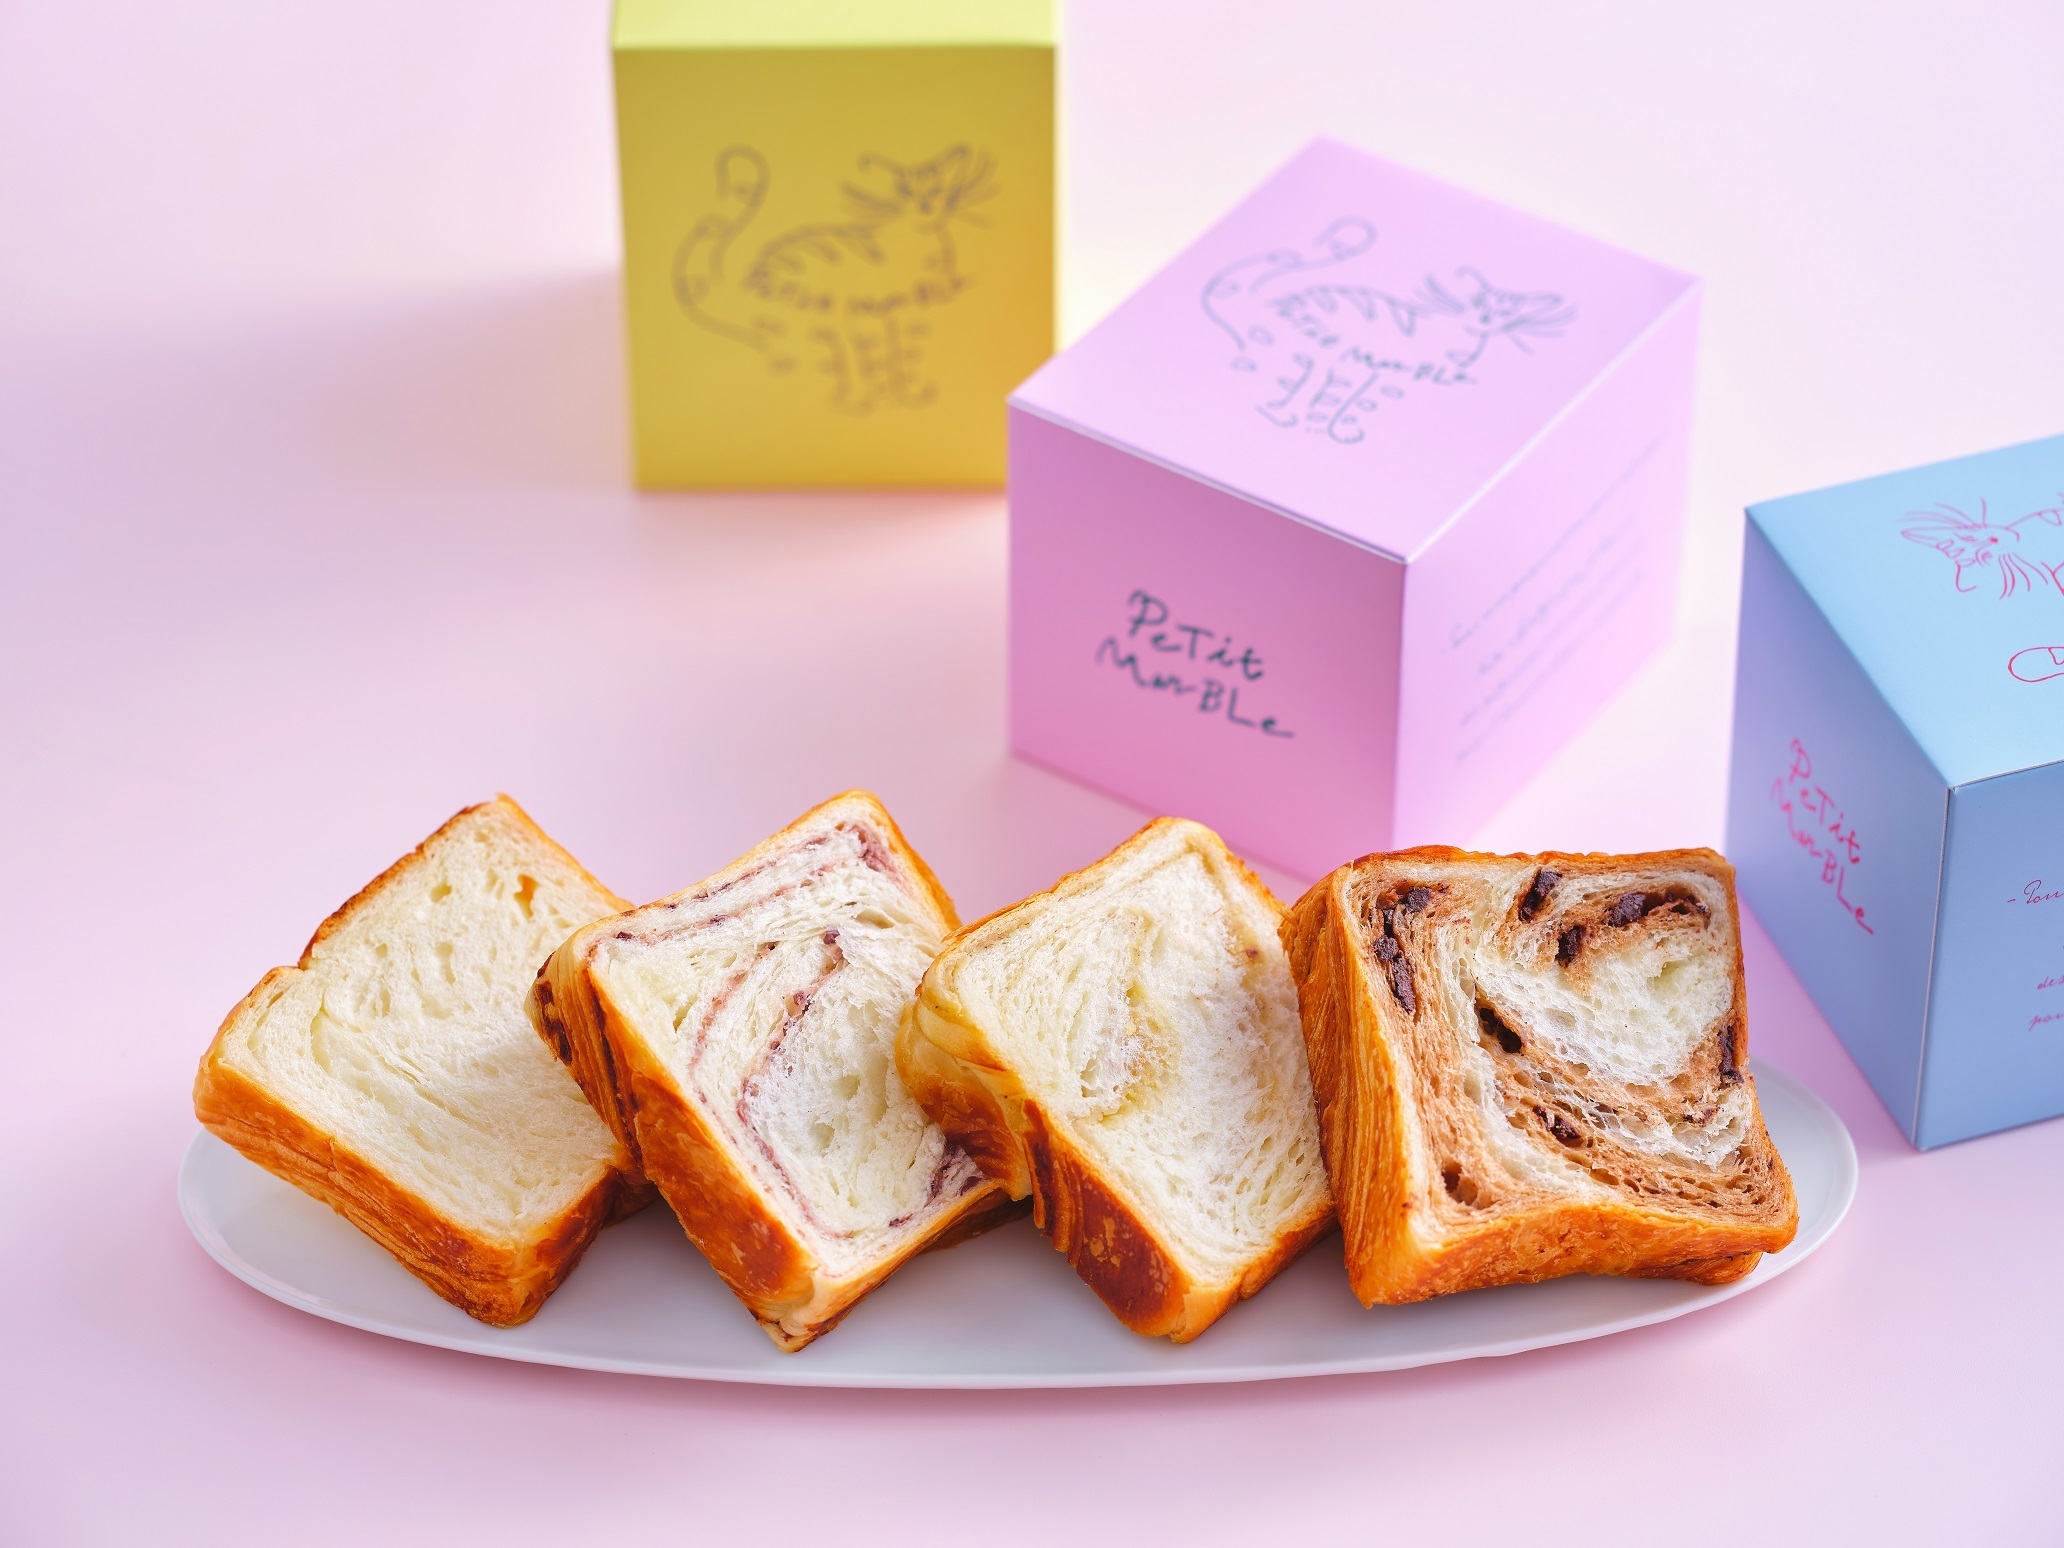 11月16日に東京ギフトパレットでデビューするナチュラル志向の
新ブランド『PeTit MarBLe(プティマーブル)』商品情報解禁！
～卵・牛乳・動物性食品不使用～